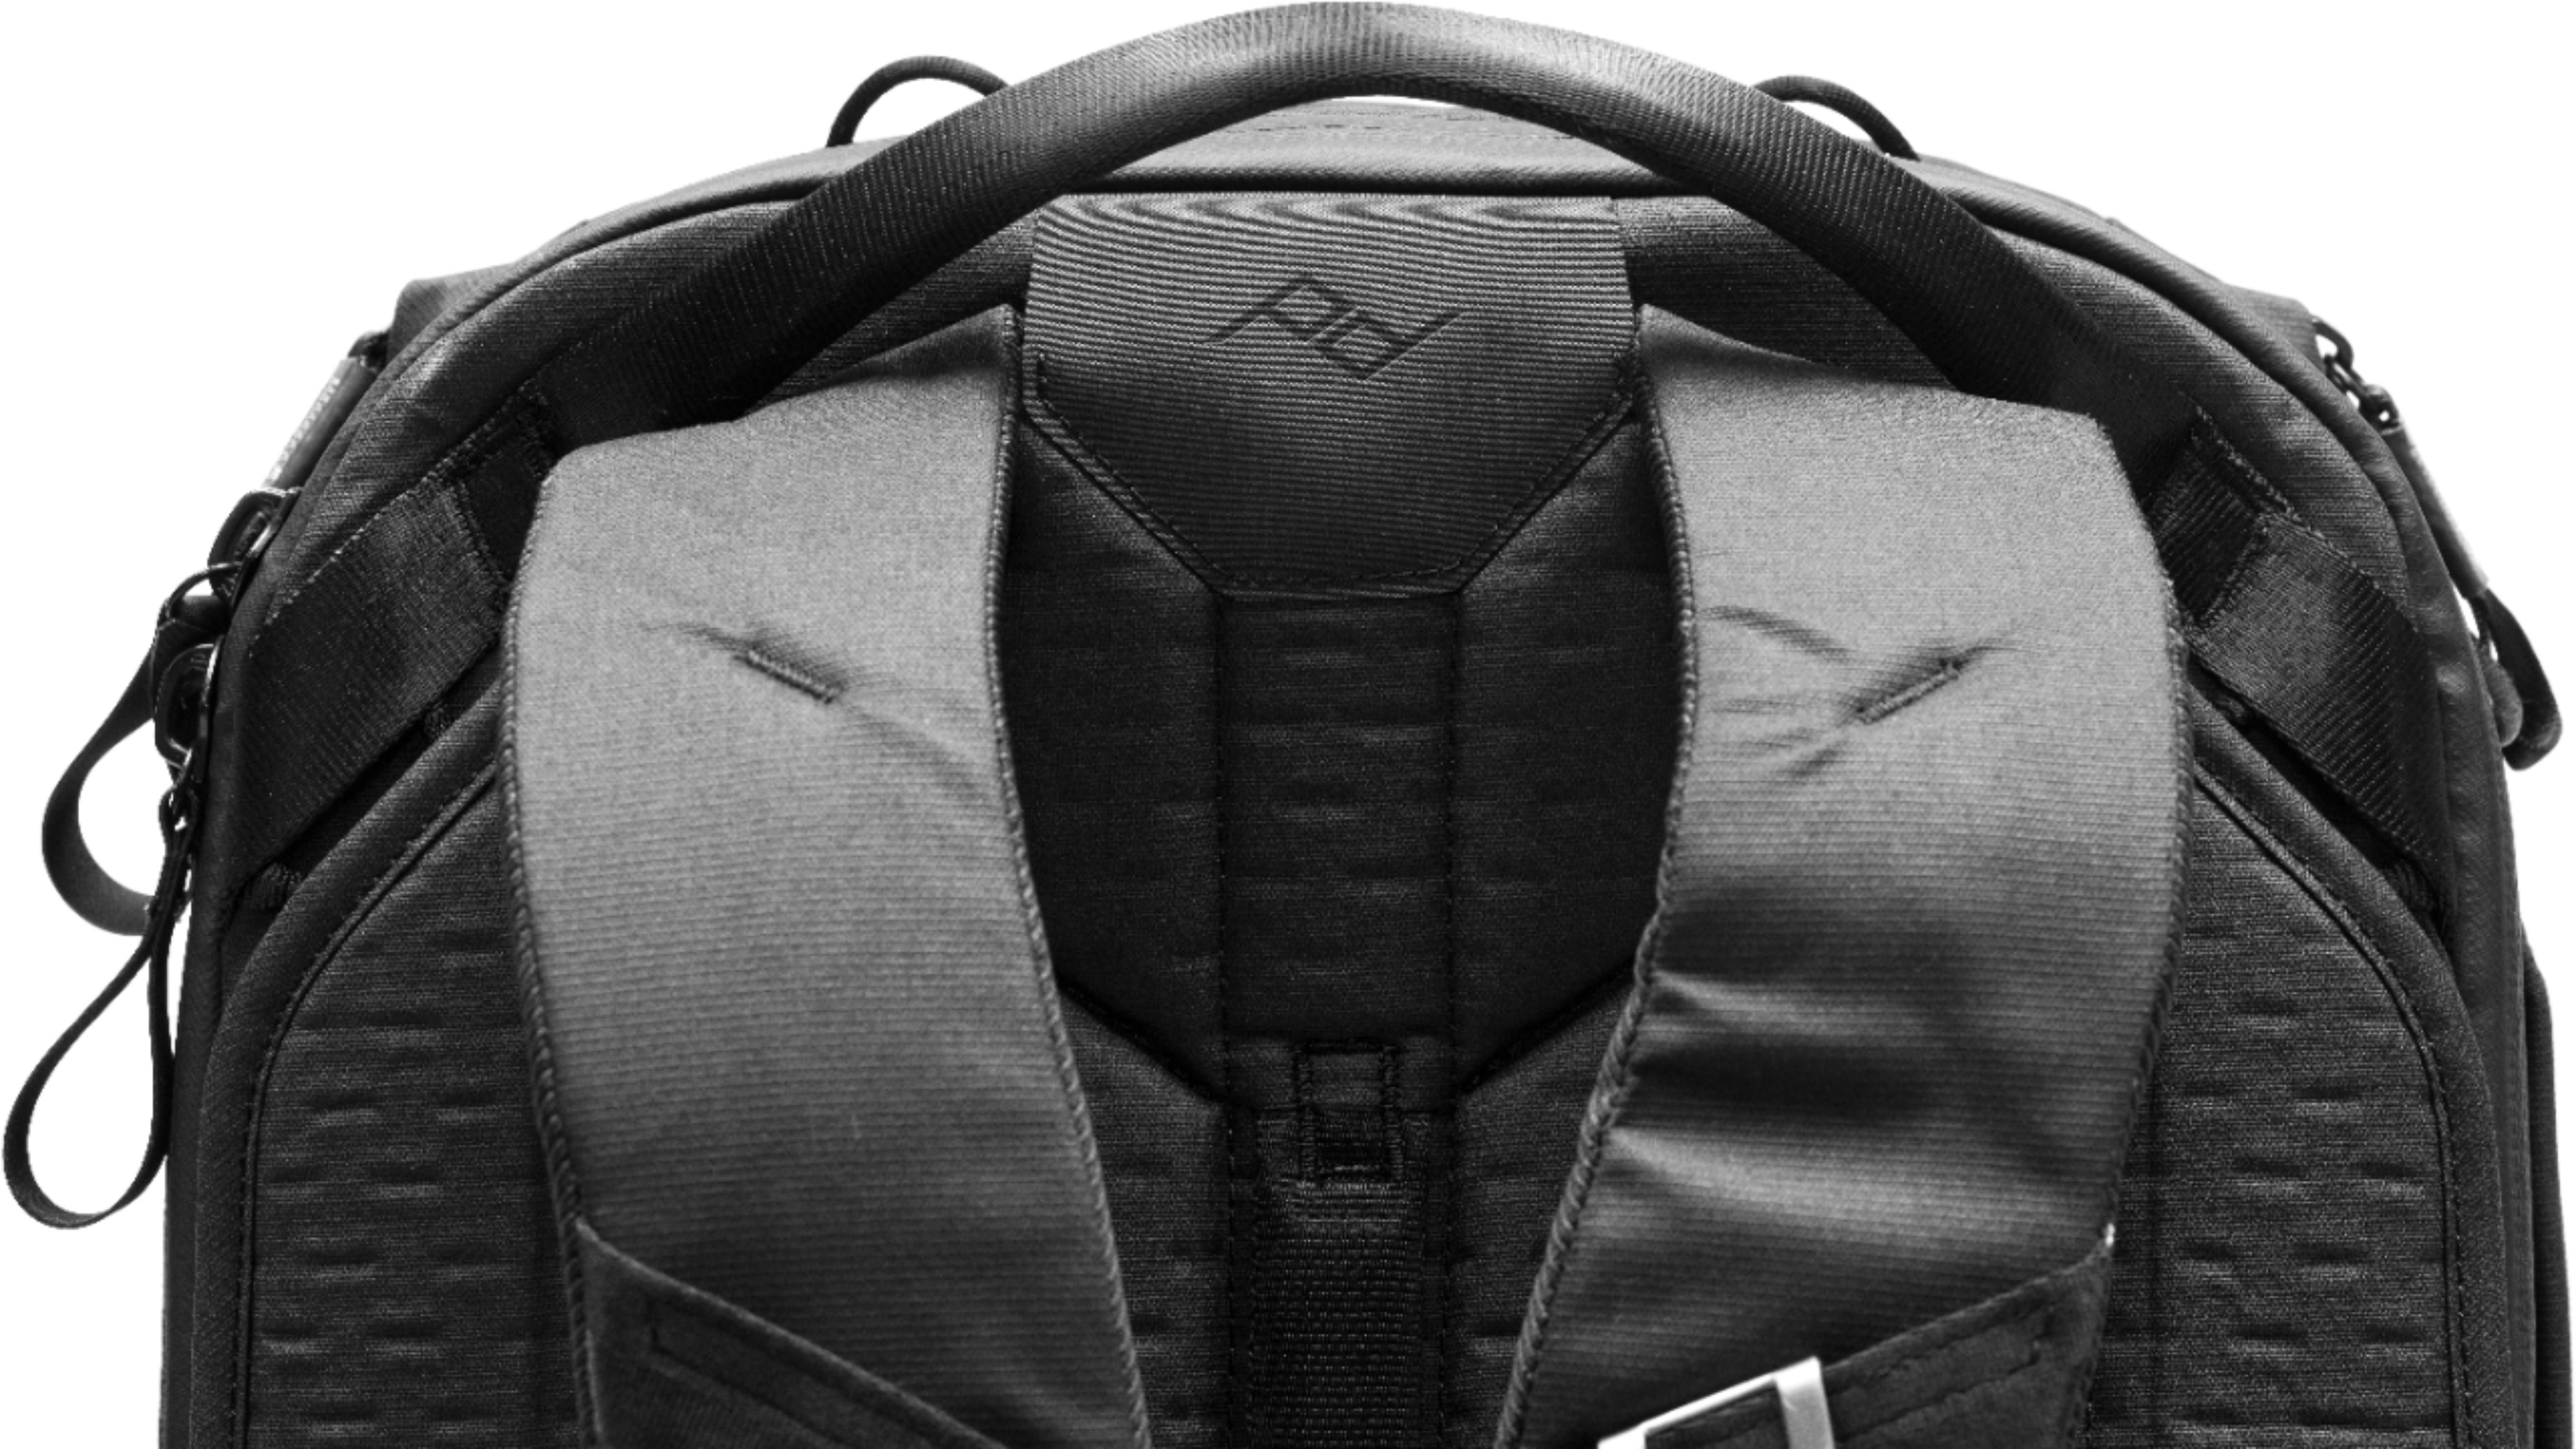 Peak Design Travel Backpack 45 L - Black